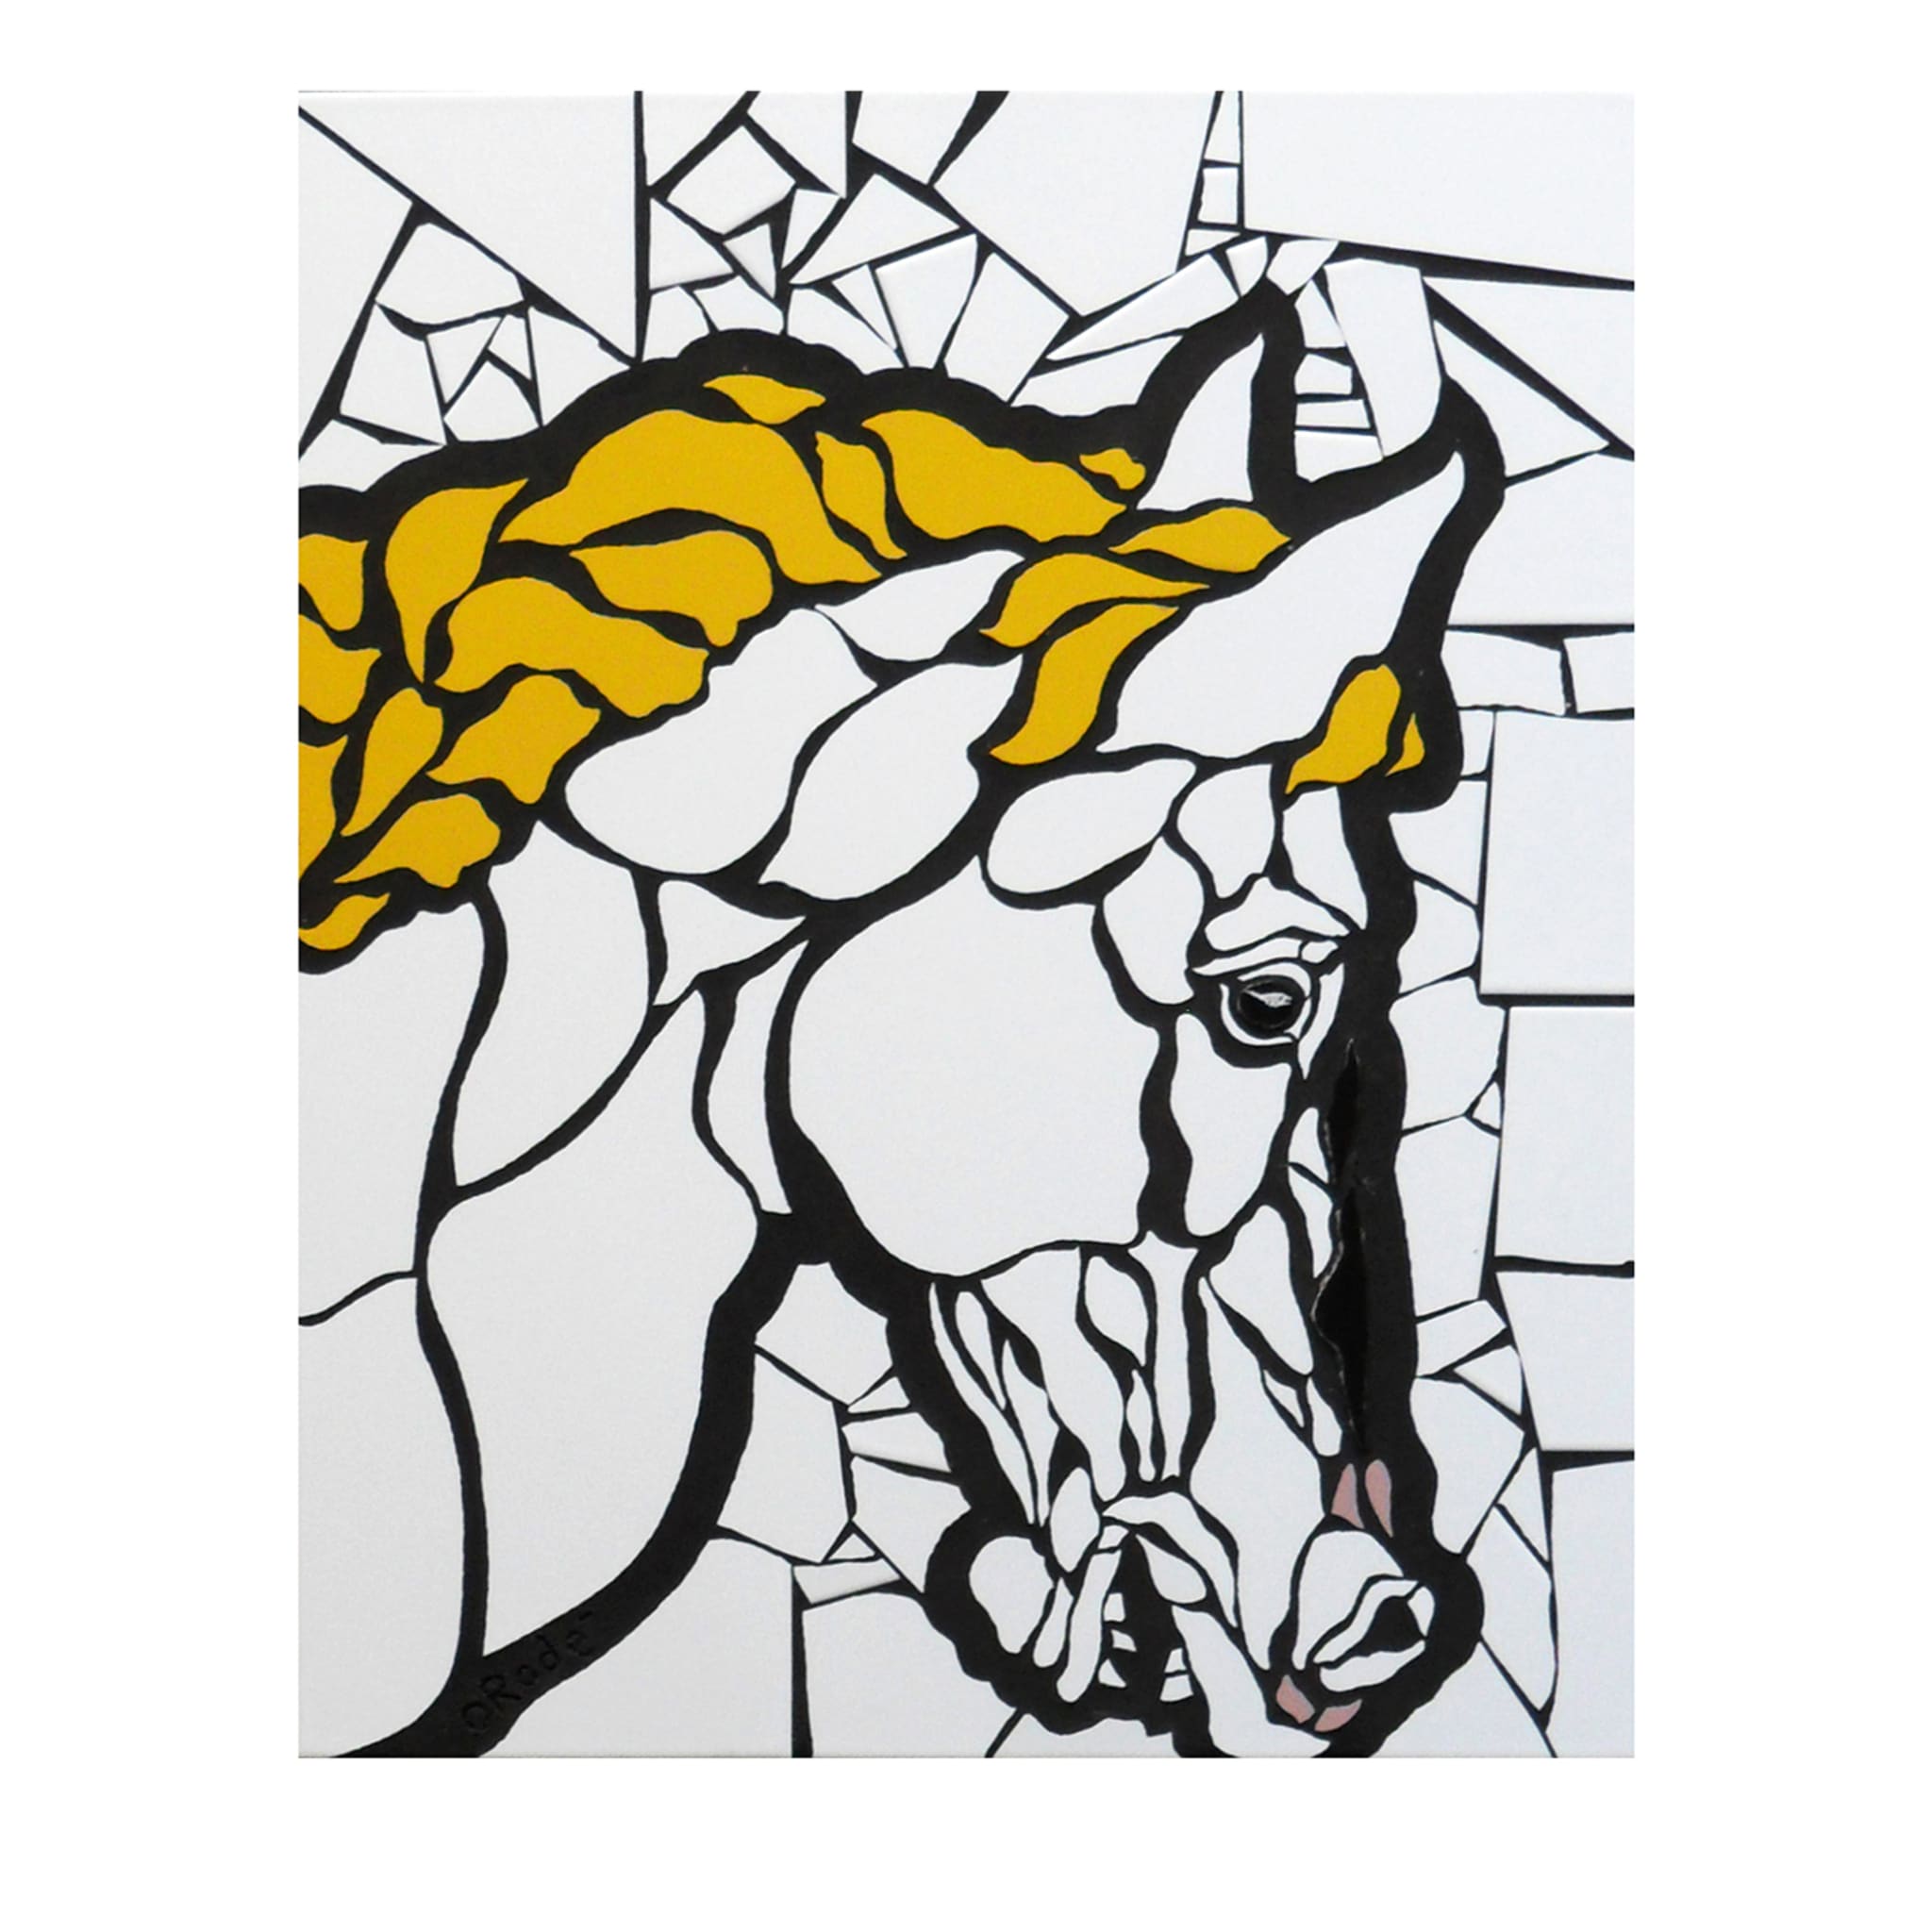 L'ultimo mosaico di cavalli su pannello  - Vista principale